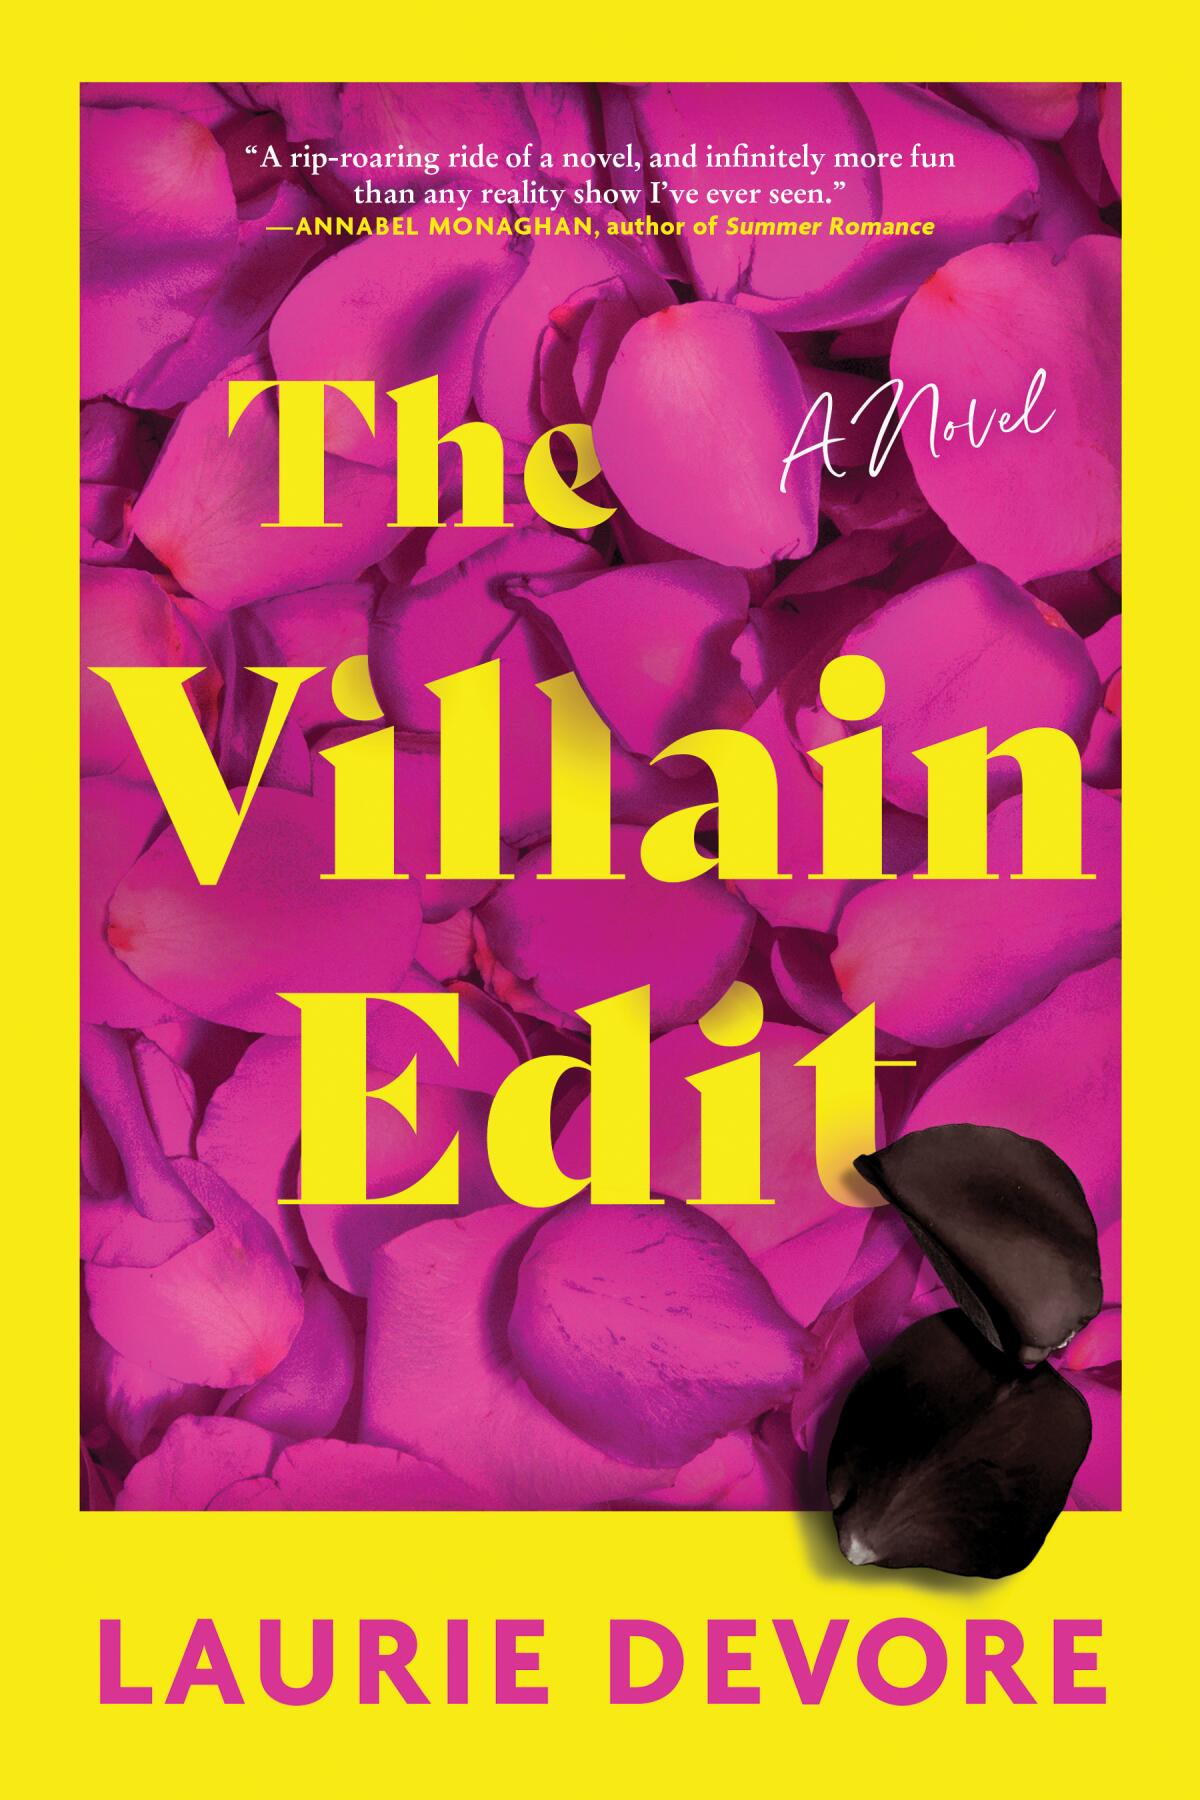 "The Villian Edit" by Laurie Devore